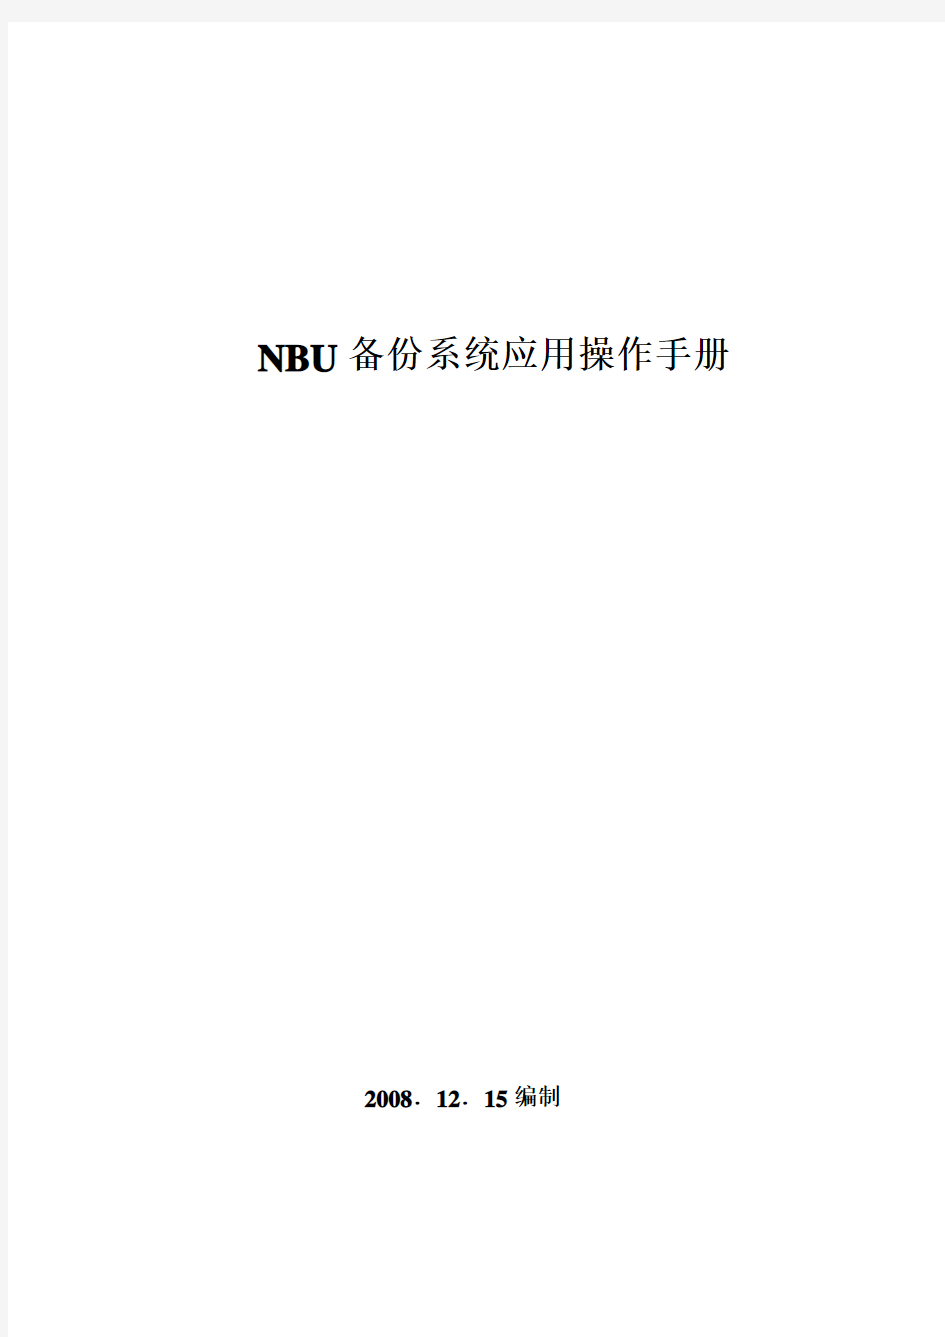 Netbackup 中文操作手册